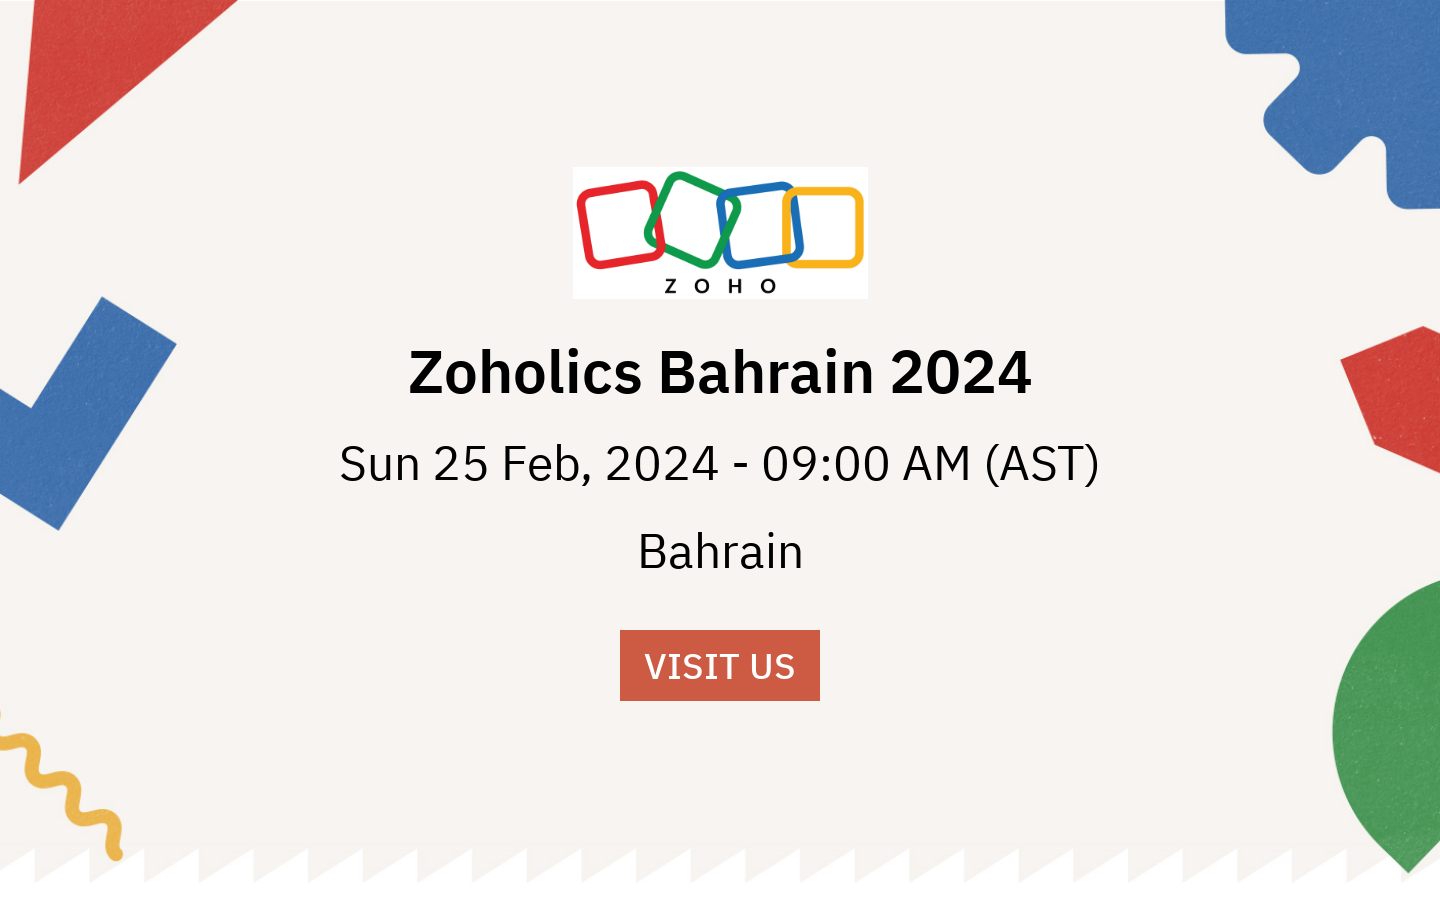 Zoholics Bahrain 2024